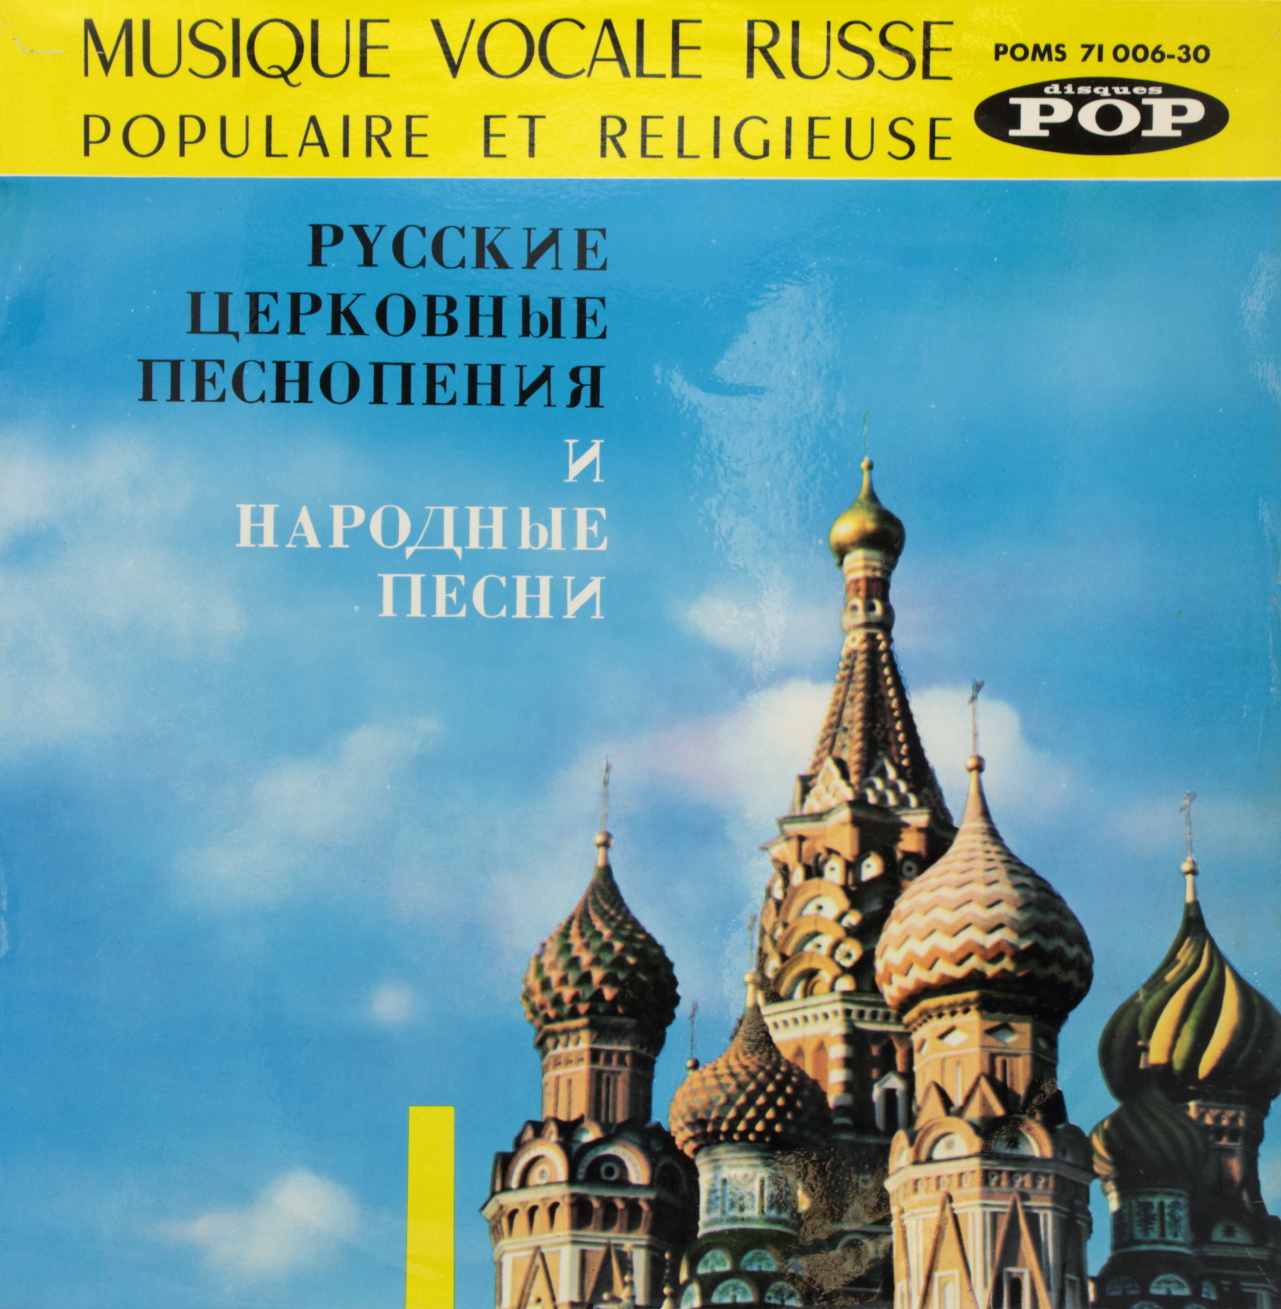 Musique vocale russe, Populaire et religieuse